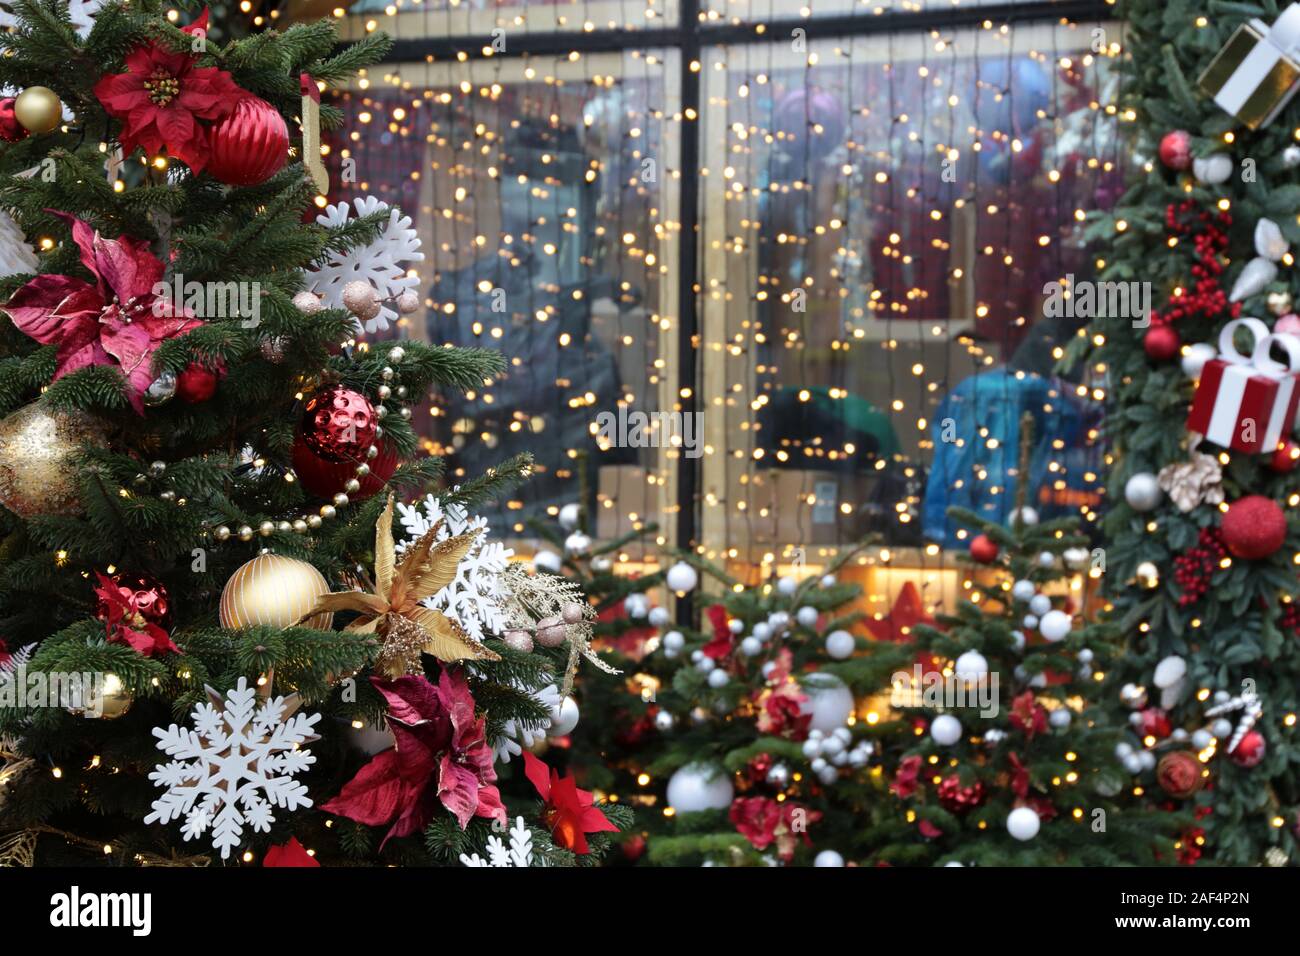 Décorations de Noël dans une vitrine sur une rue de la ville. Branches de sapin et boules de jouet, lumières de fête, fête du Nouvel An, la magie de la maison de vacances Banque D'Images